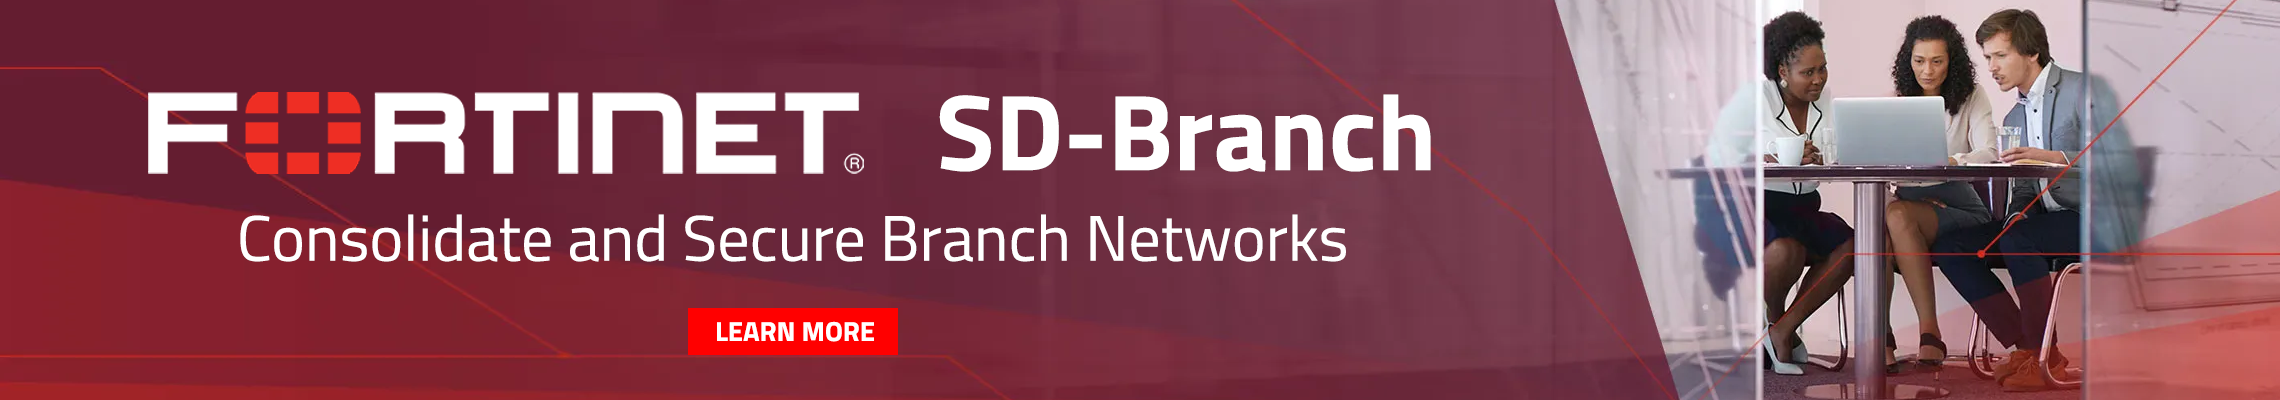 Fortinet SD-Branch Banner